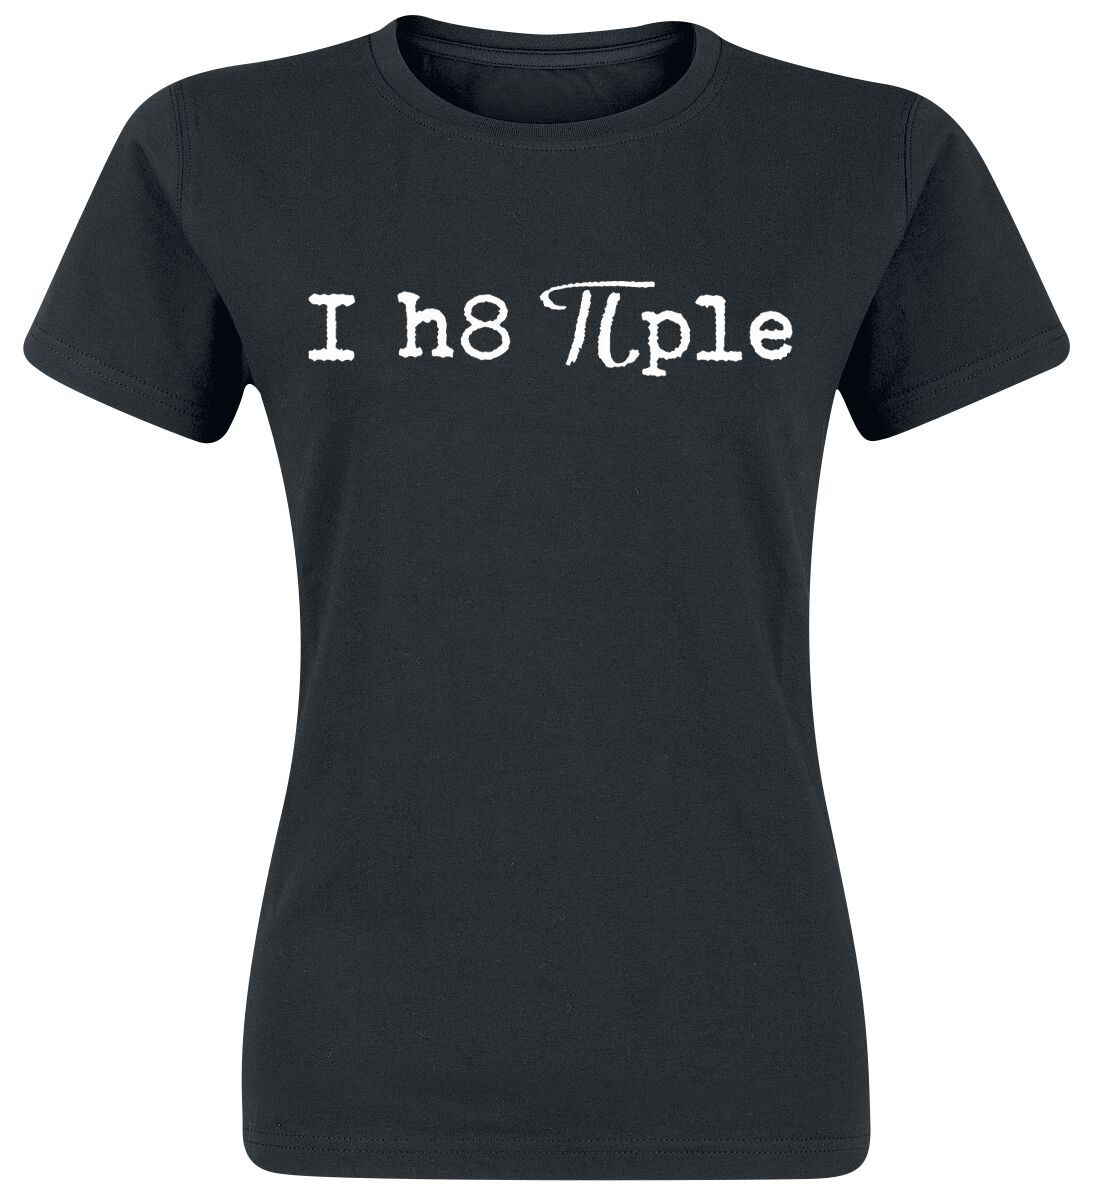 T-Shirt Manches courtes Fun de Slogans - I Hate People - S à XL - pour Femme - noir